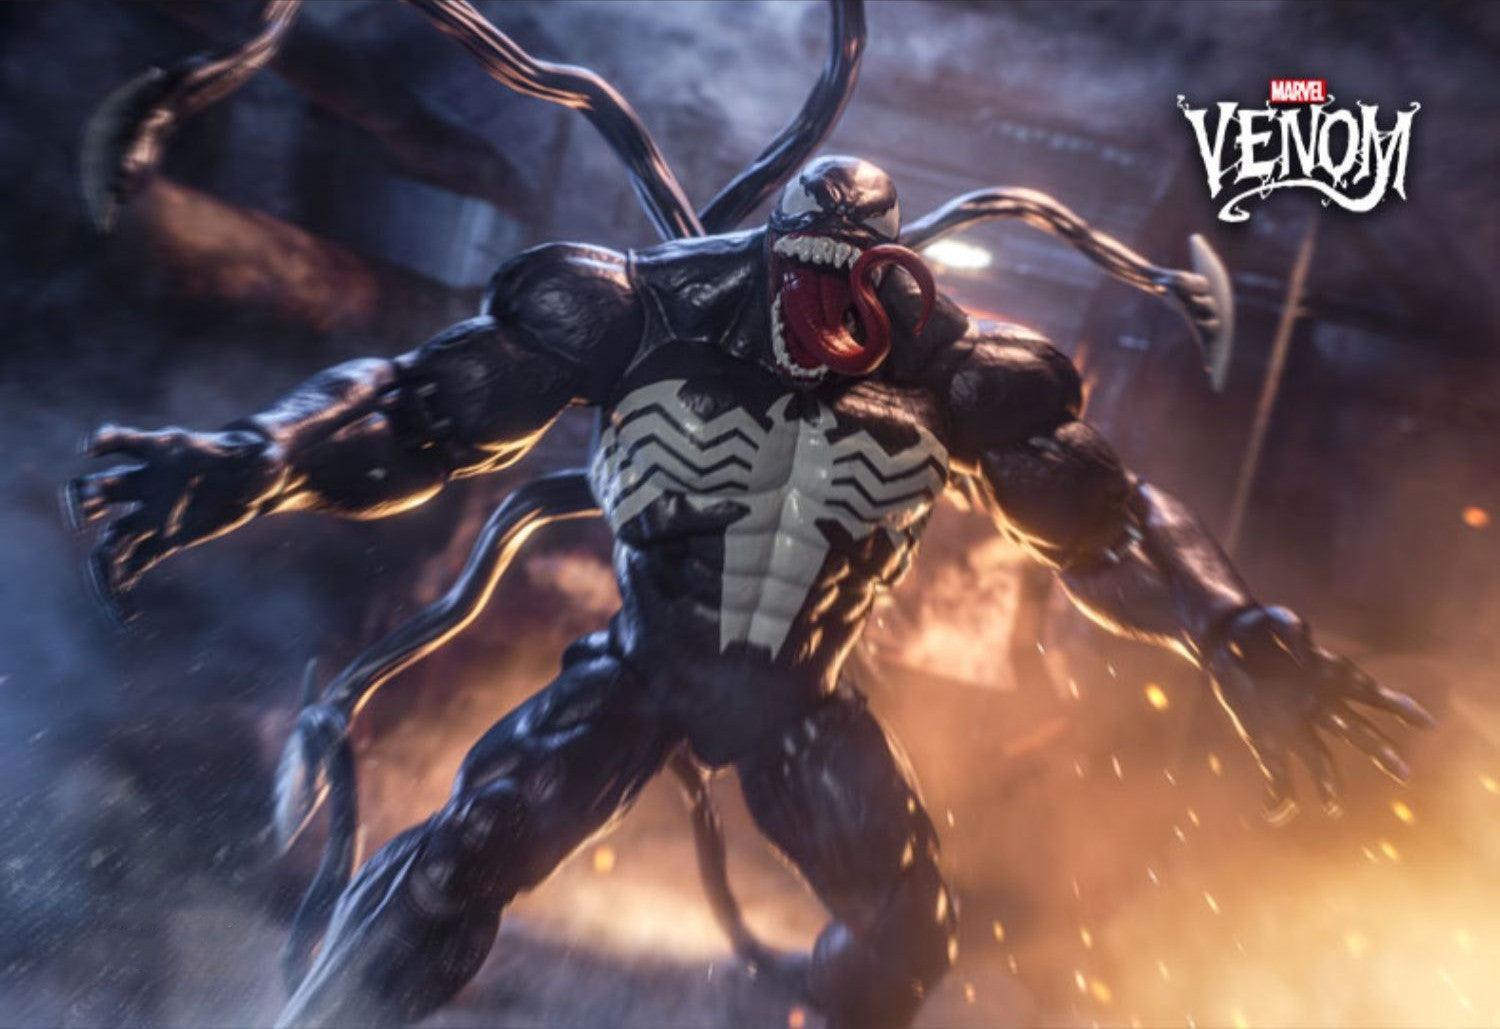 ZD Toys - 1:10 Venom Action Toy